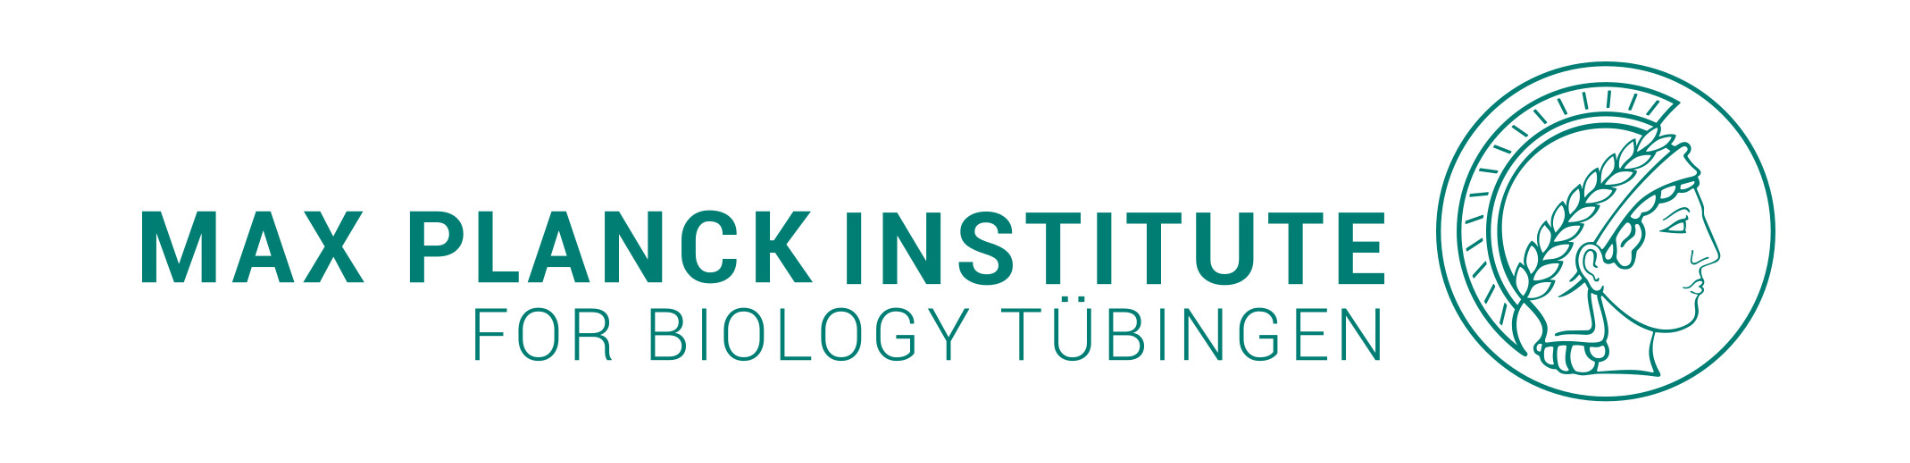 Max Planck Institute for Biology Tübingen & University of Tübingen